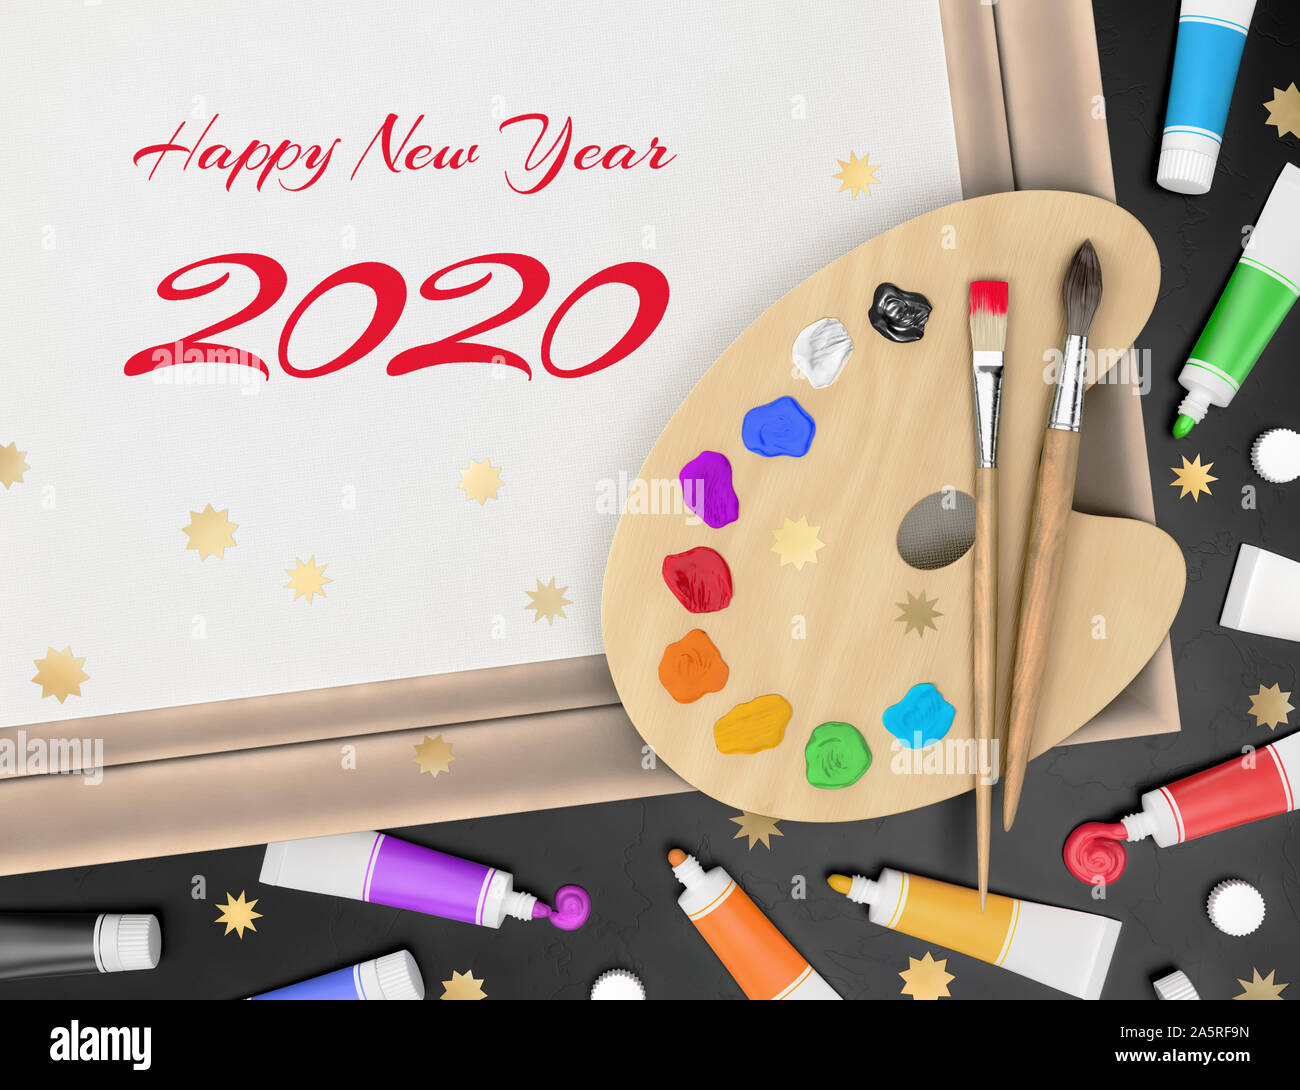 Festliche Grüße aus ein Künstler - Frohes Neues Jahr 2020 Stockfoto